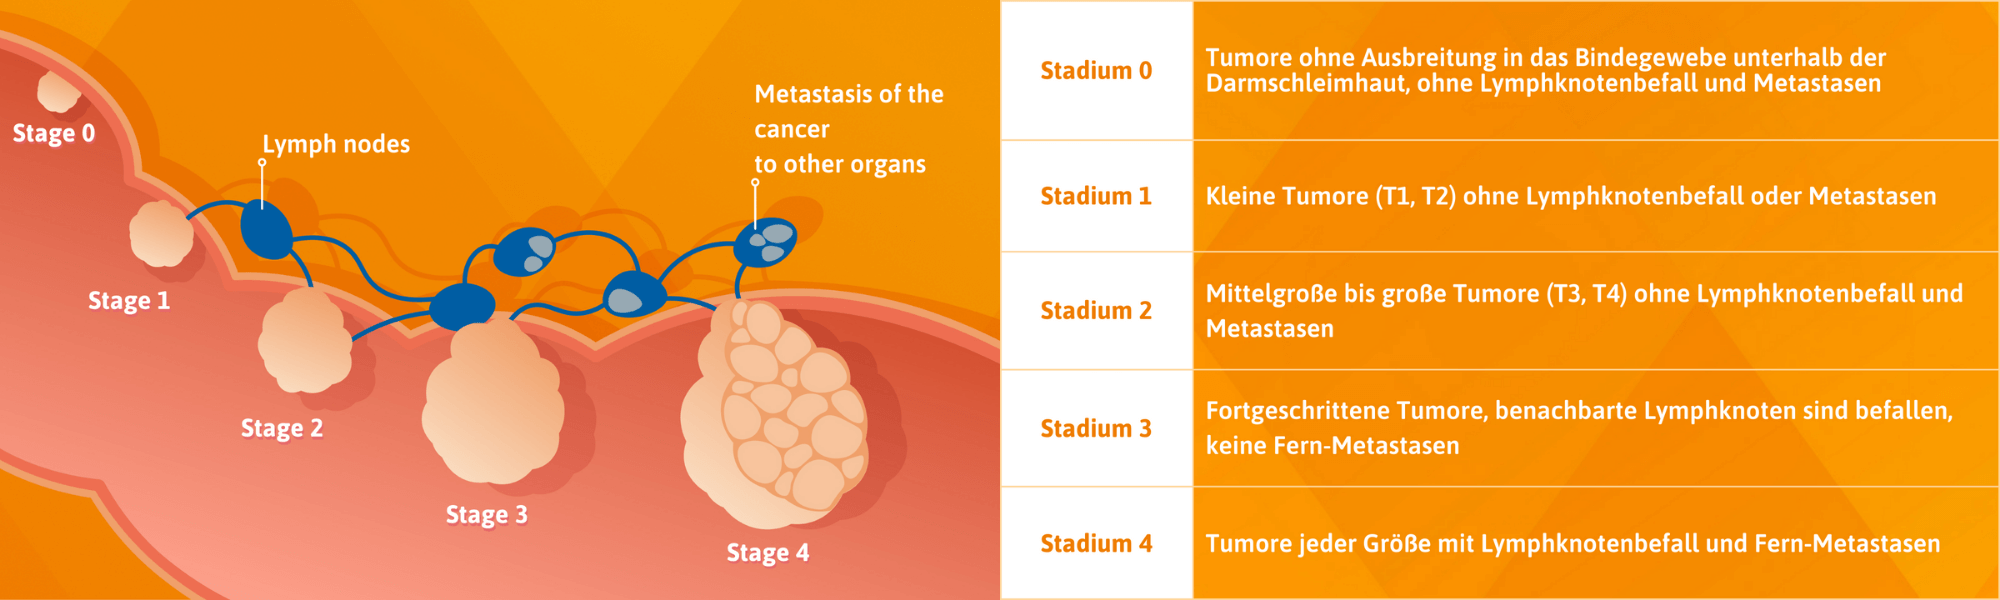  Stadium 0: Tumore ohne Ausbreitung in das Bindegewebe unterhalb der Darmschleimhaut, ohne Lymphknotenbefall und Metastasen. Stadium 1: Kleine Tumore (T1, T2) ohne Lymphknotenbefall oder Metastasen. Stadium 2: Mittelgroße bis große Tumore (T3, T4) ohne Lymphknotenbefall und Metastasen. Stadium 3: Fortgeschrittene Tumore, benachbarte Lymphknoten sind befallen, keine Fern-Metastasen. Stadium 4: Tumore jeder Größe mit Lymphknotenbefall und Fern-Metastasen 